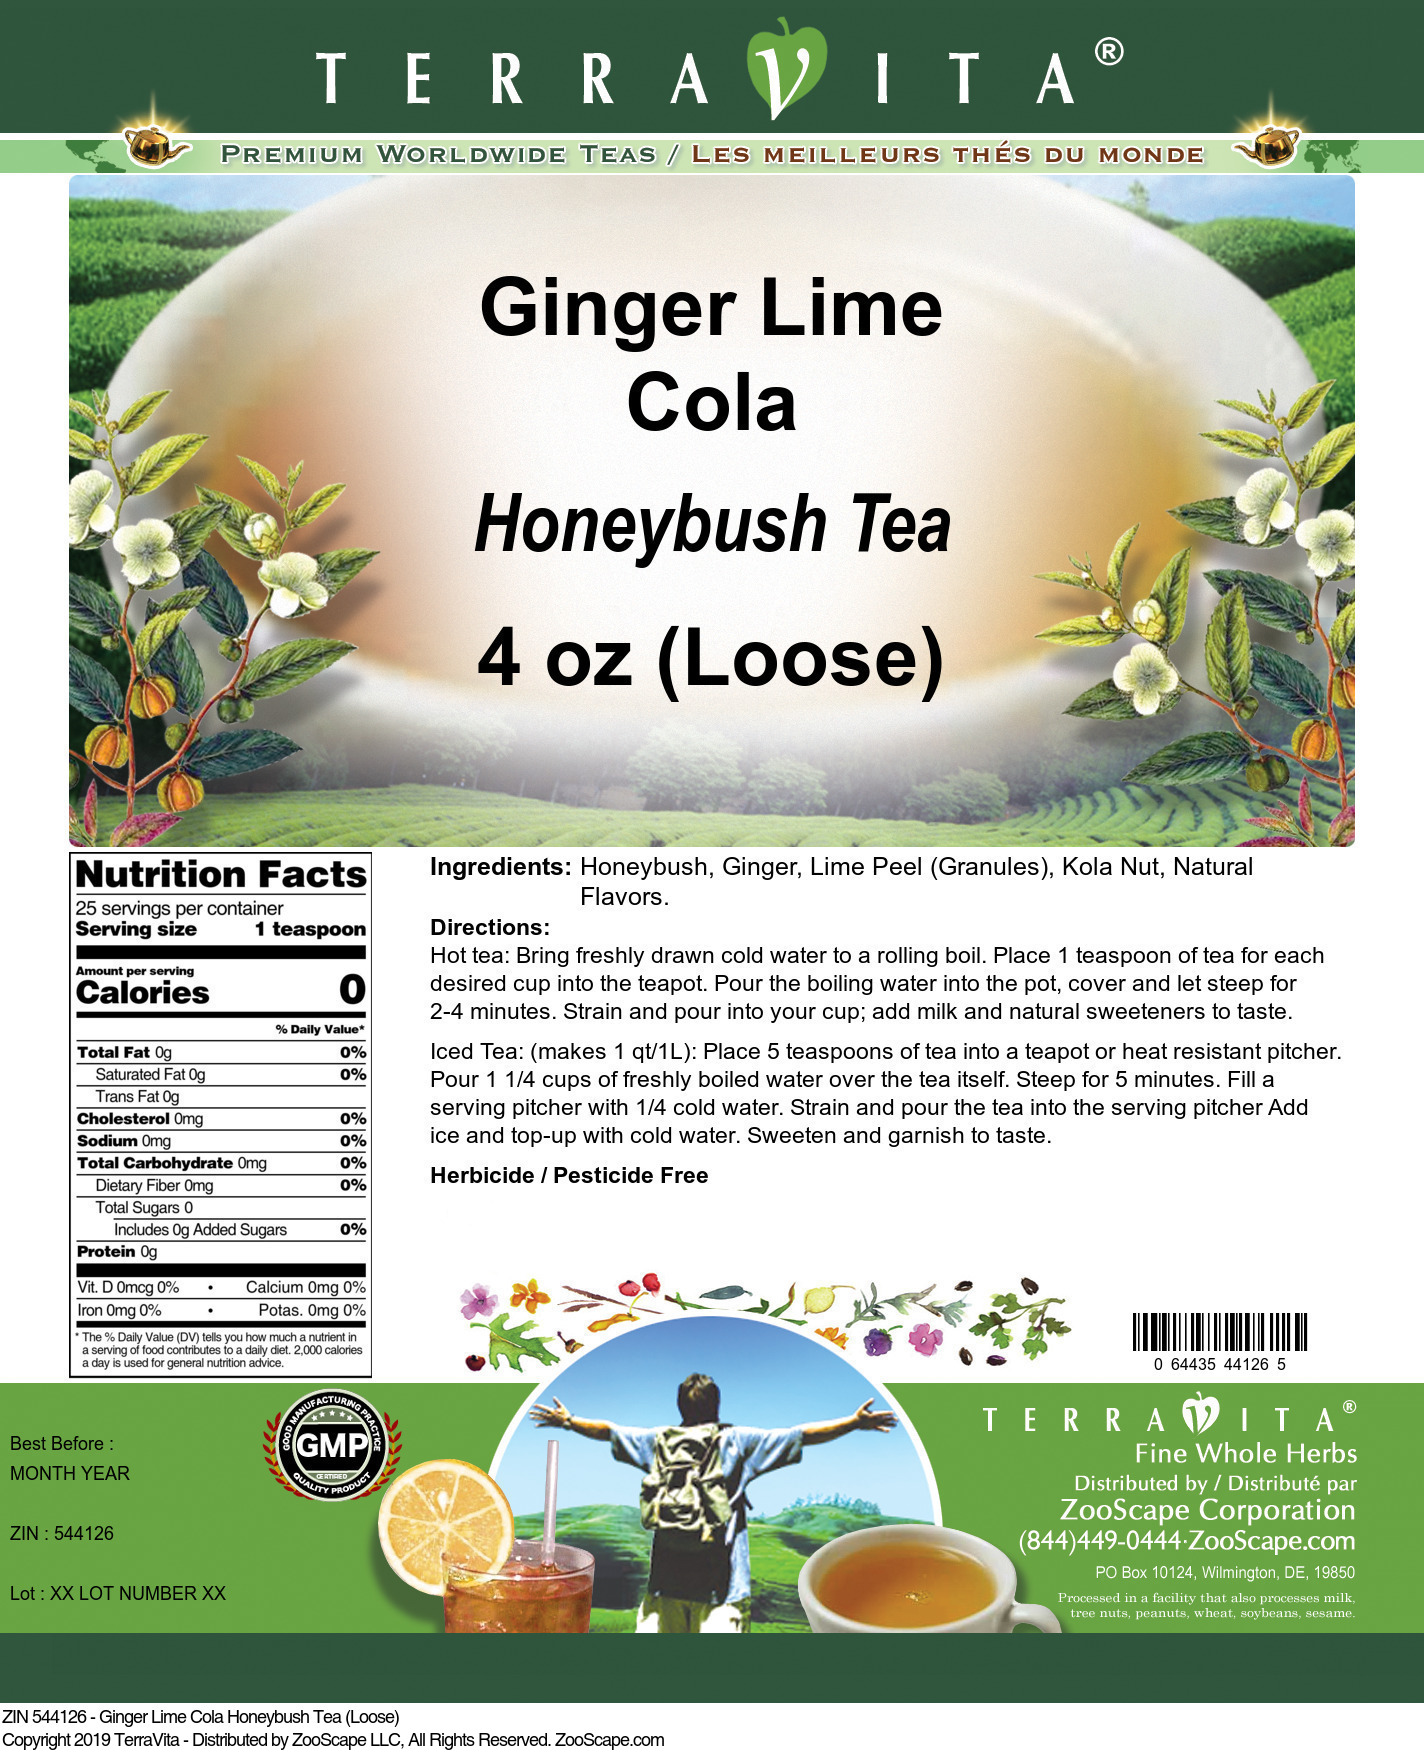 Ginger Lime Cola Honeybush Tea (Loose) - Label